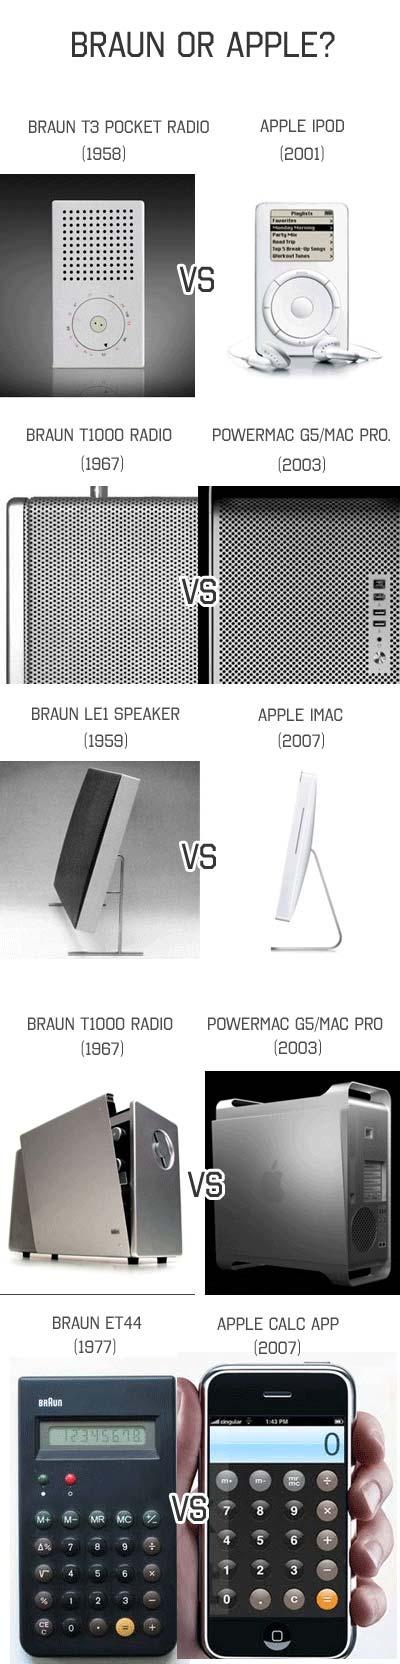 Actualidad Informática. Los diseños de Apple inspirados en los de Braun. Rafael Barzanallana. UMU